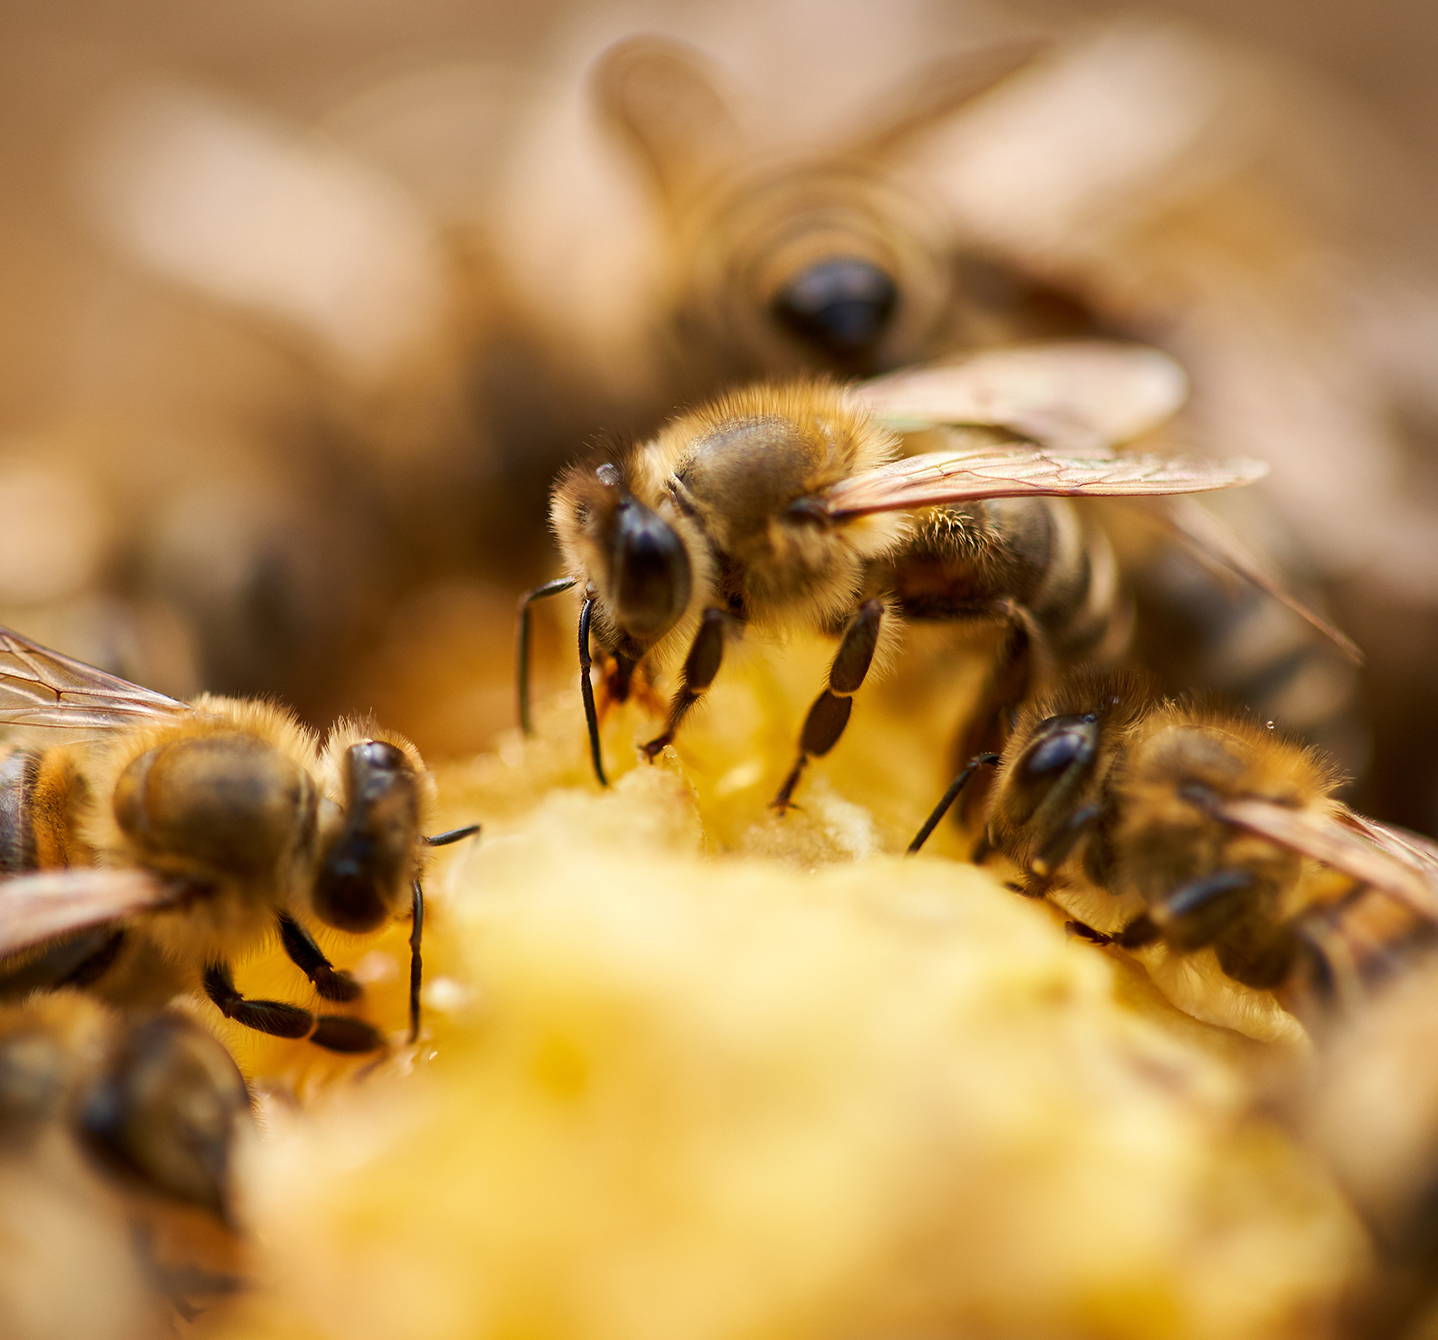 Čo je alergia na bodnutie včely? Tieto včely zbierajú nektár. Jed z ich žihadla môže u niektorých ľudí spôsobiť alergickú reakciu